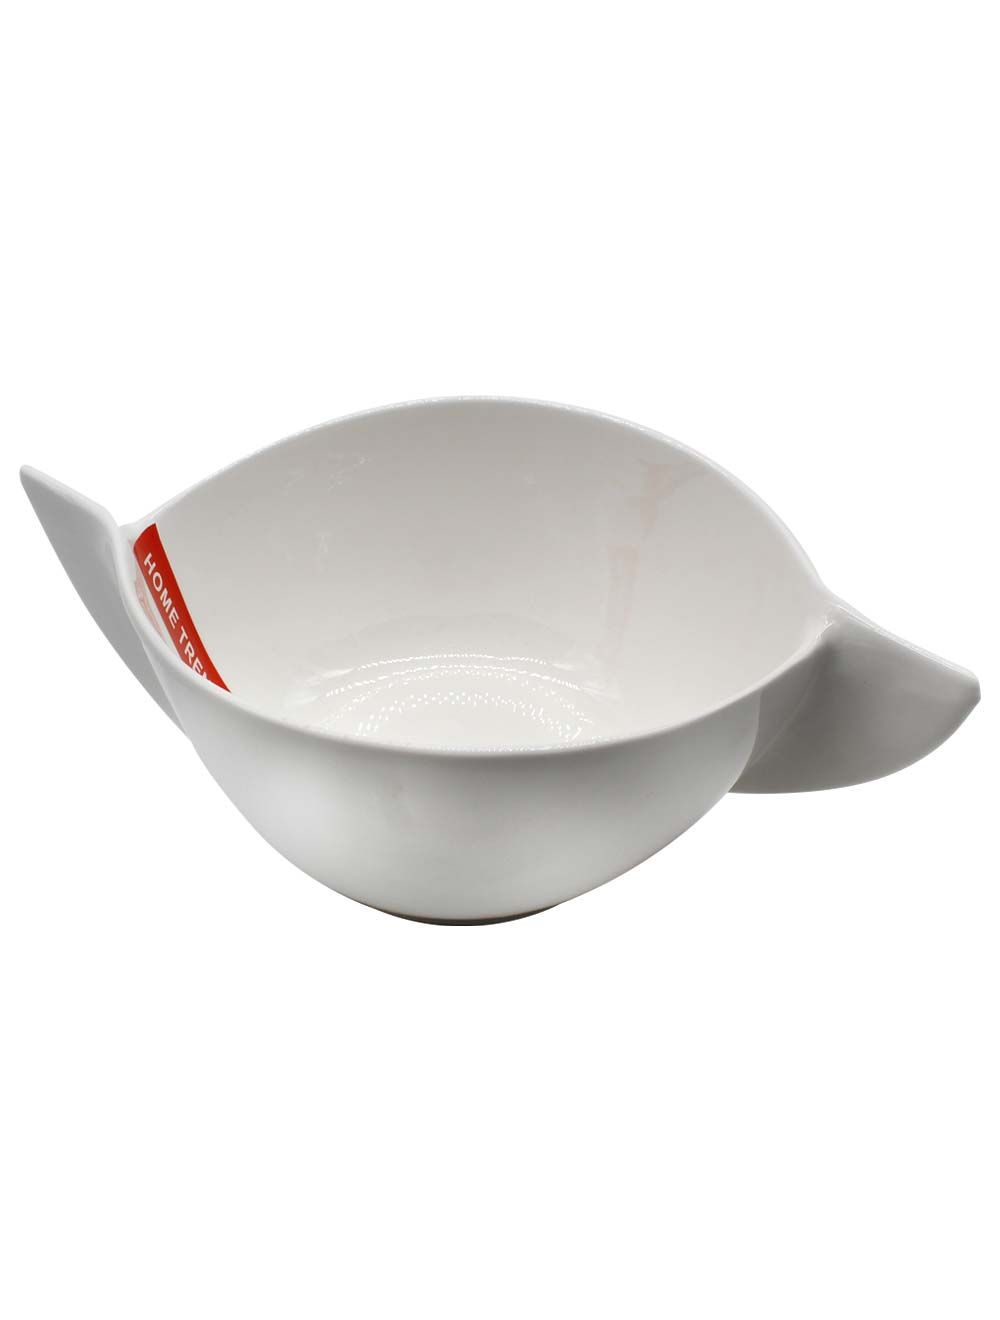 Elegant Deep Ceramic Dish 7.75